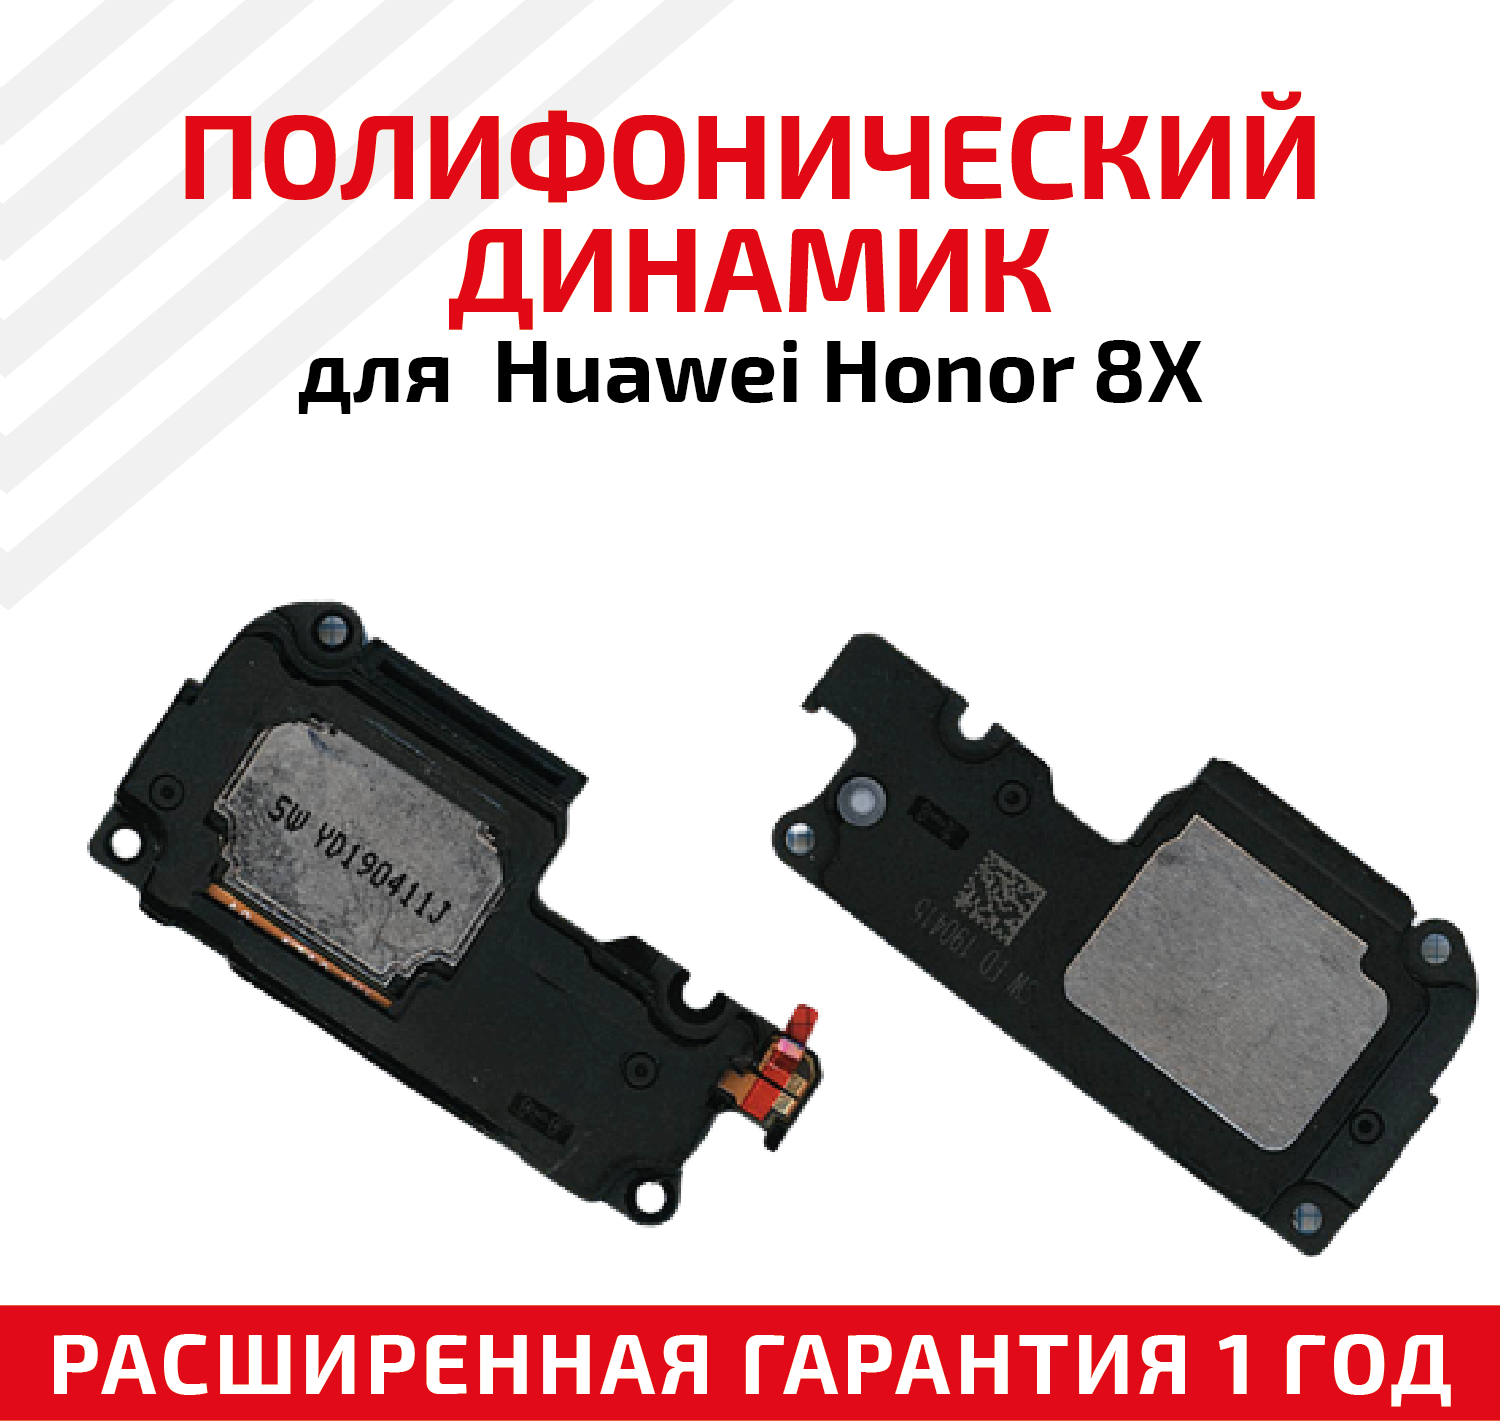 Полифонический динамик (Buzzer, бузер, звонок) для мобильного телефона (смартфона) Huawei Honor 8X